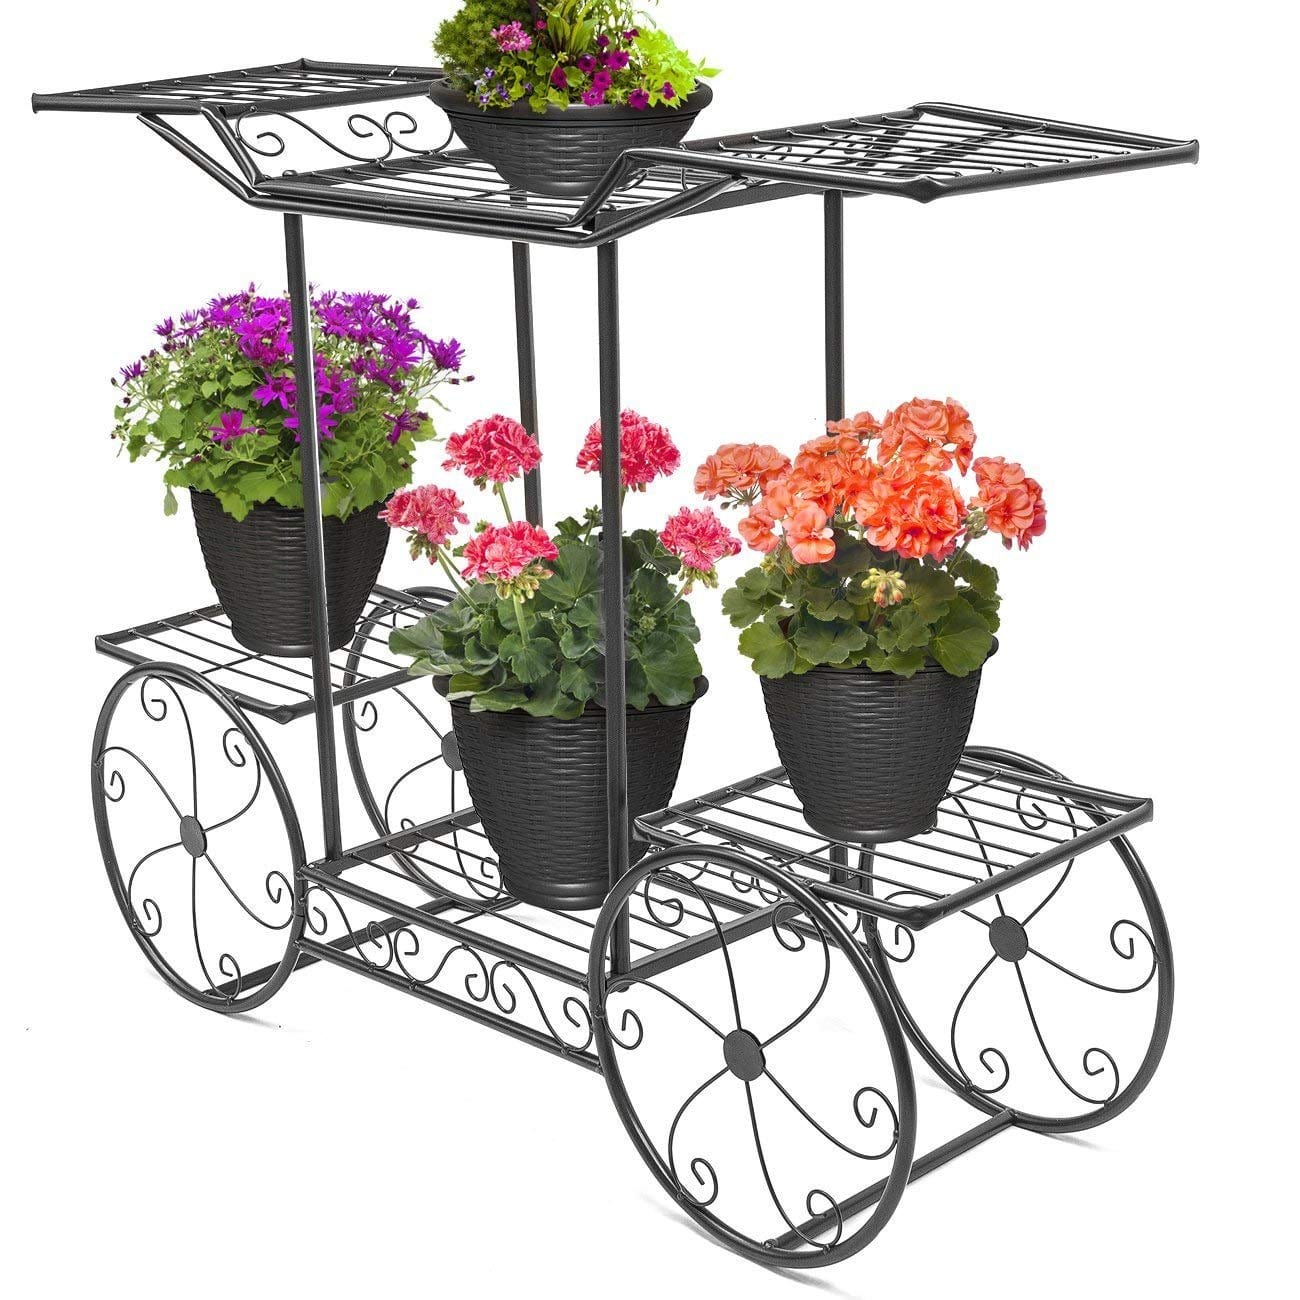 6-Tier Cart Planter Stand, Outdoor Flower Rack Flower Pot